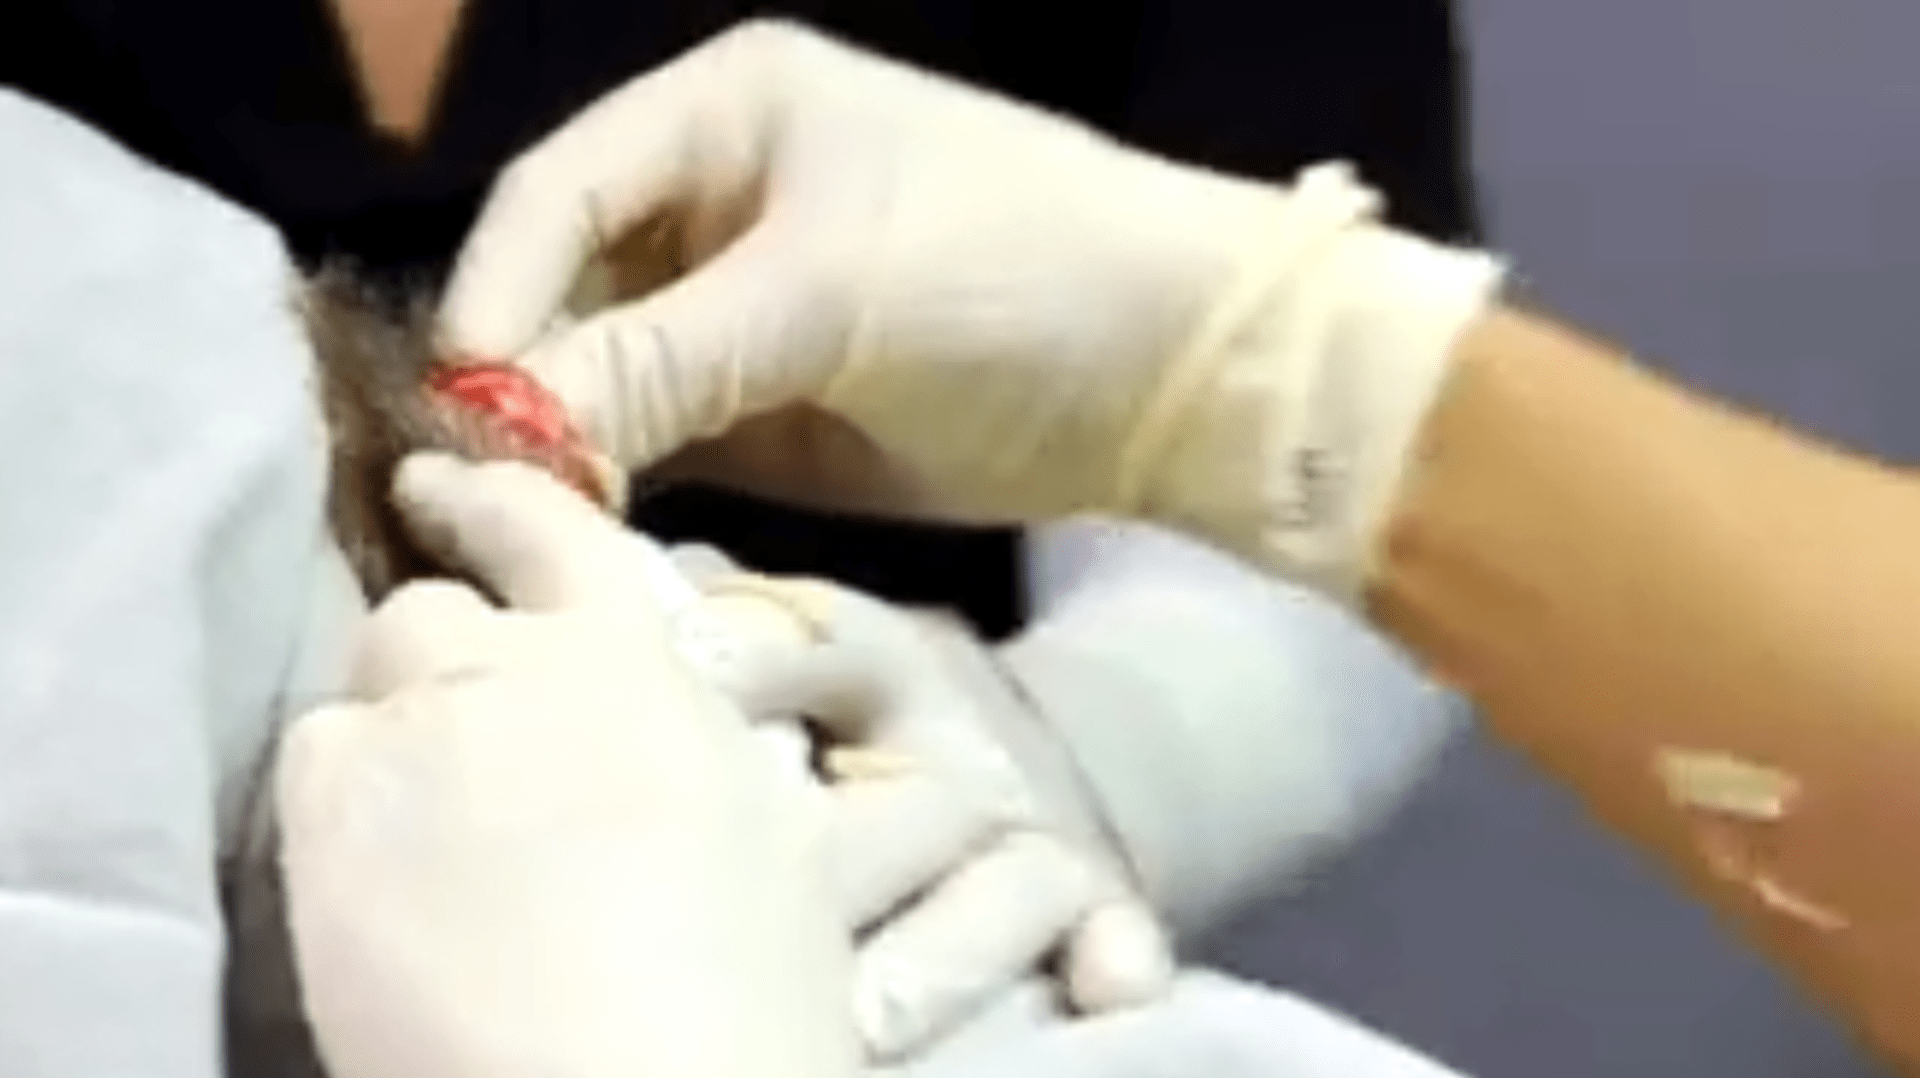 Doktorka odstranila muži z hlavy obří cystu plnou hnisu